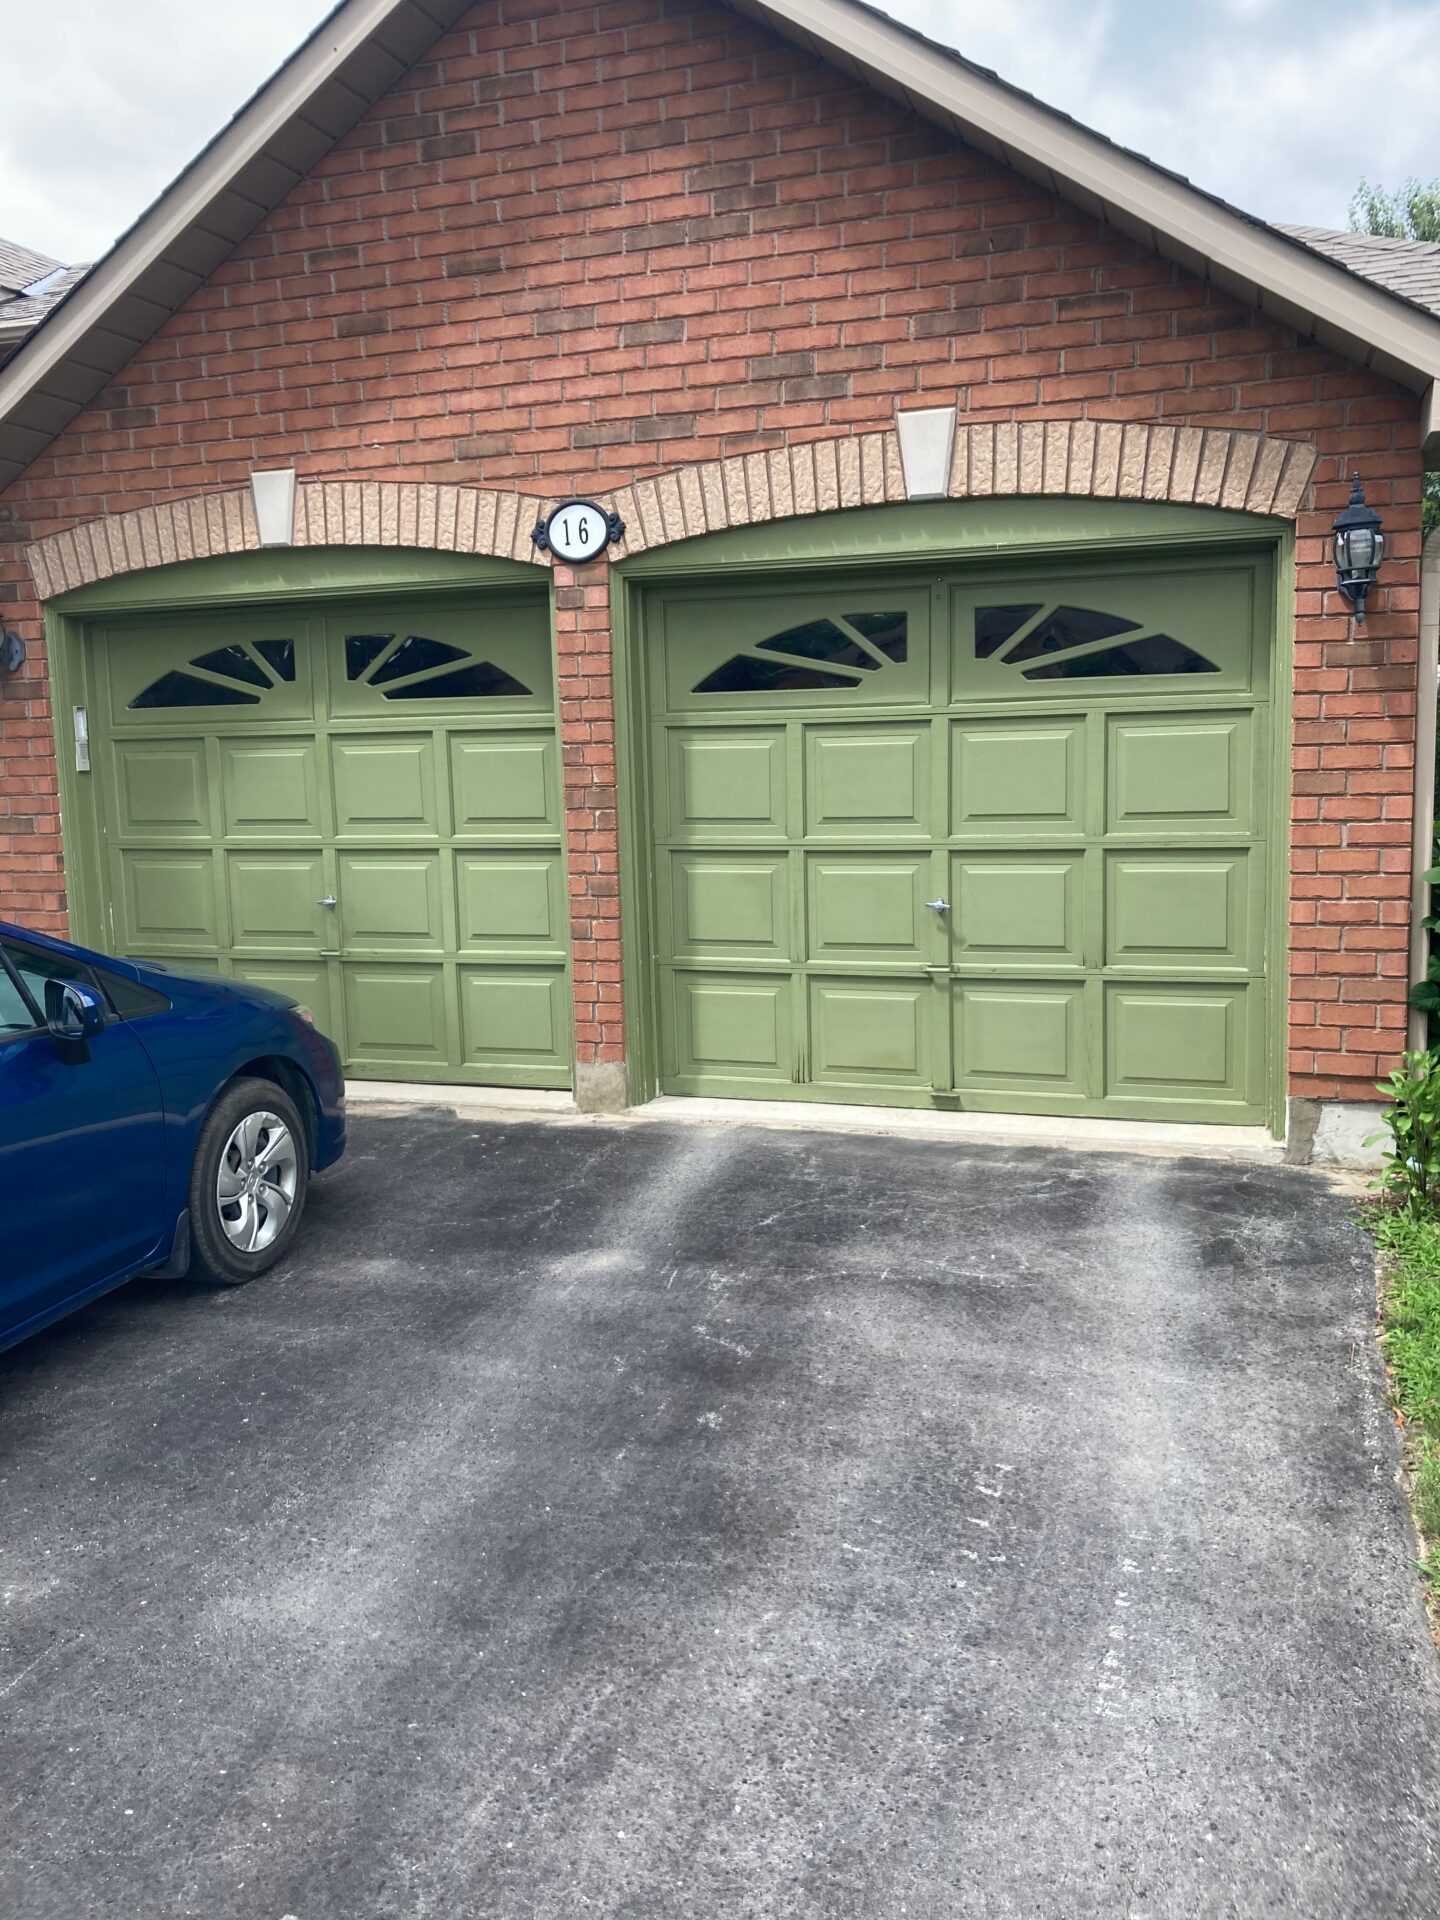 wooden garage doors on a brick home in Barrie Ontario